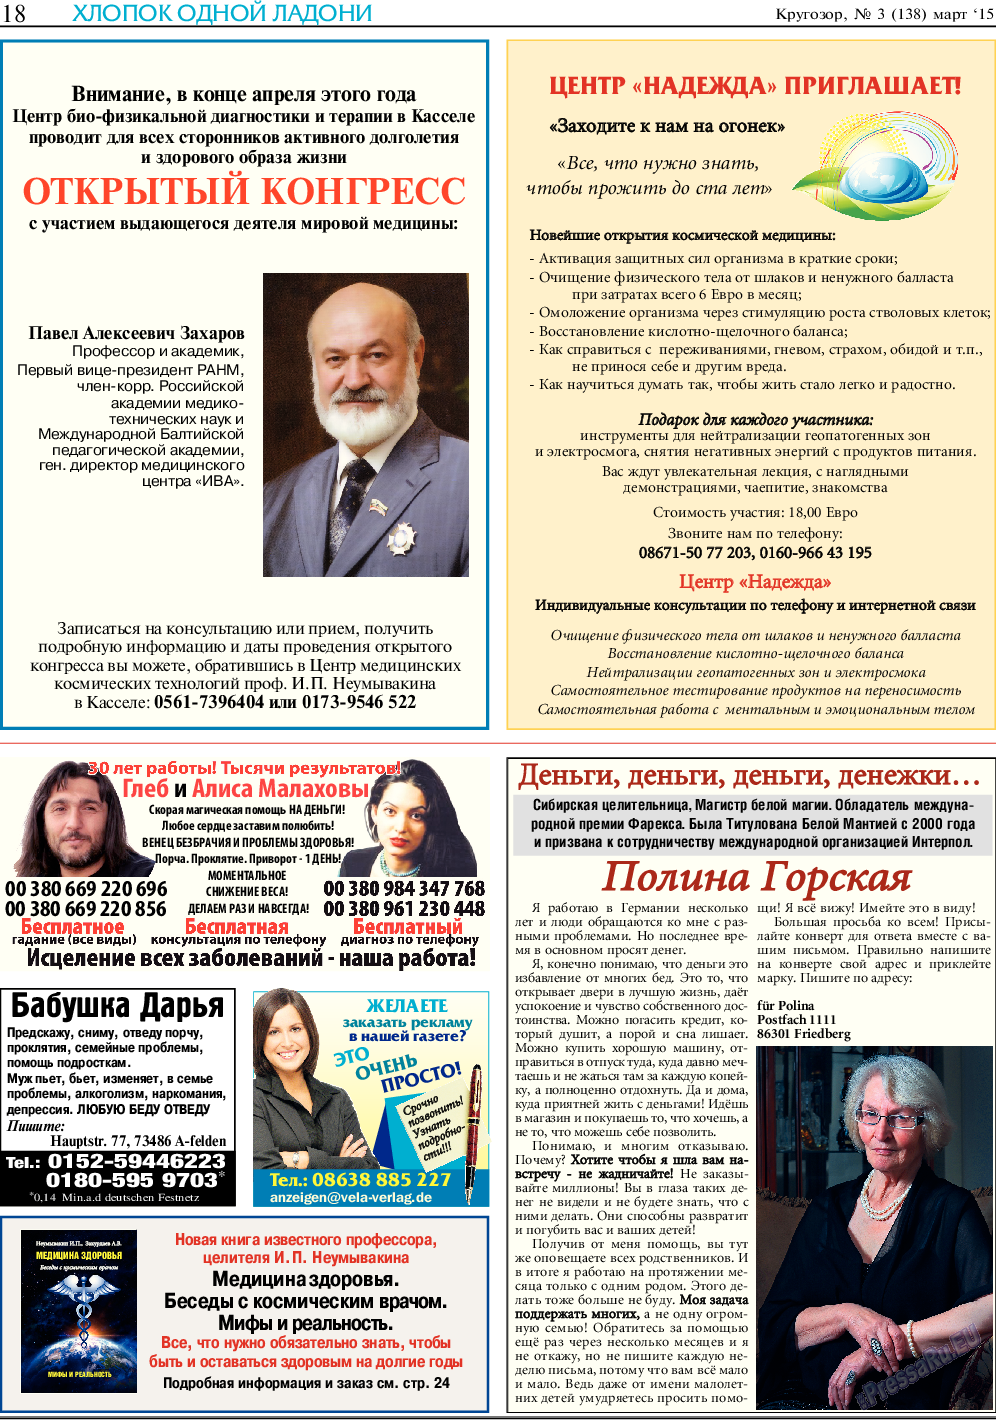 Кругозор, газета. 2015 №3 стр.18